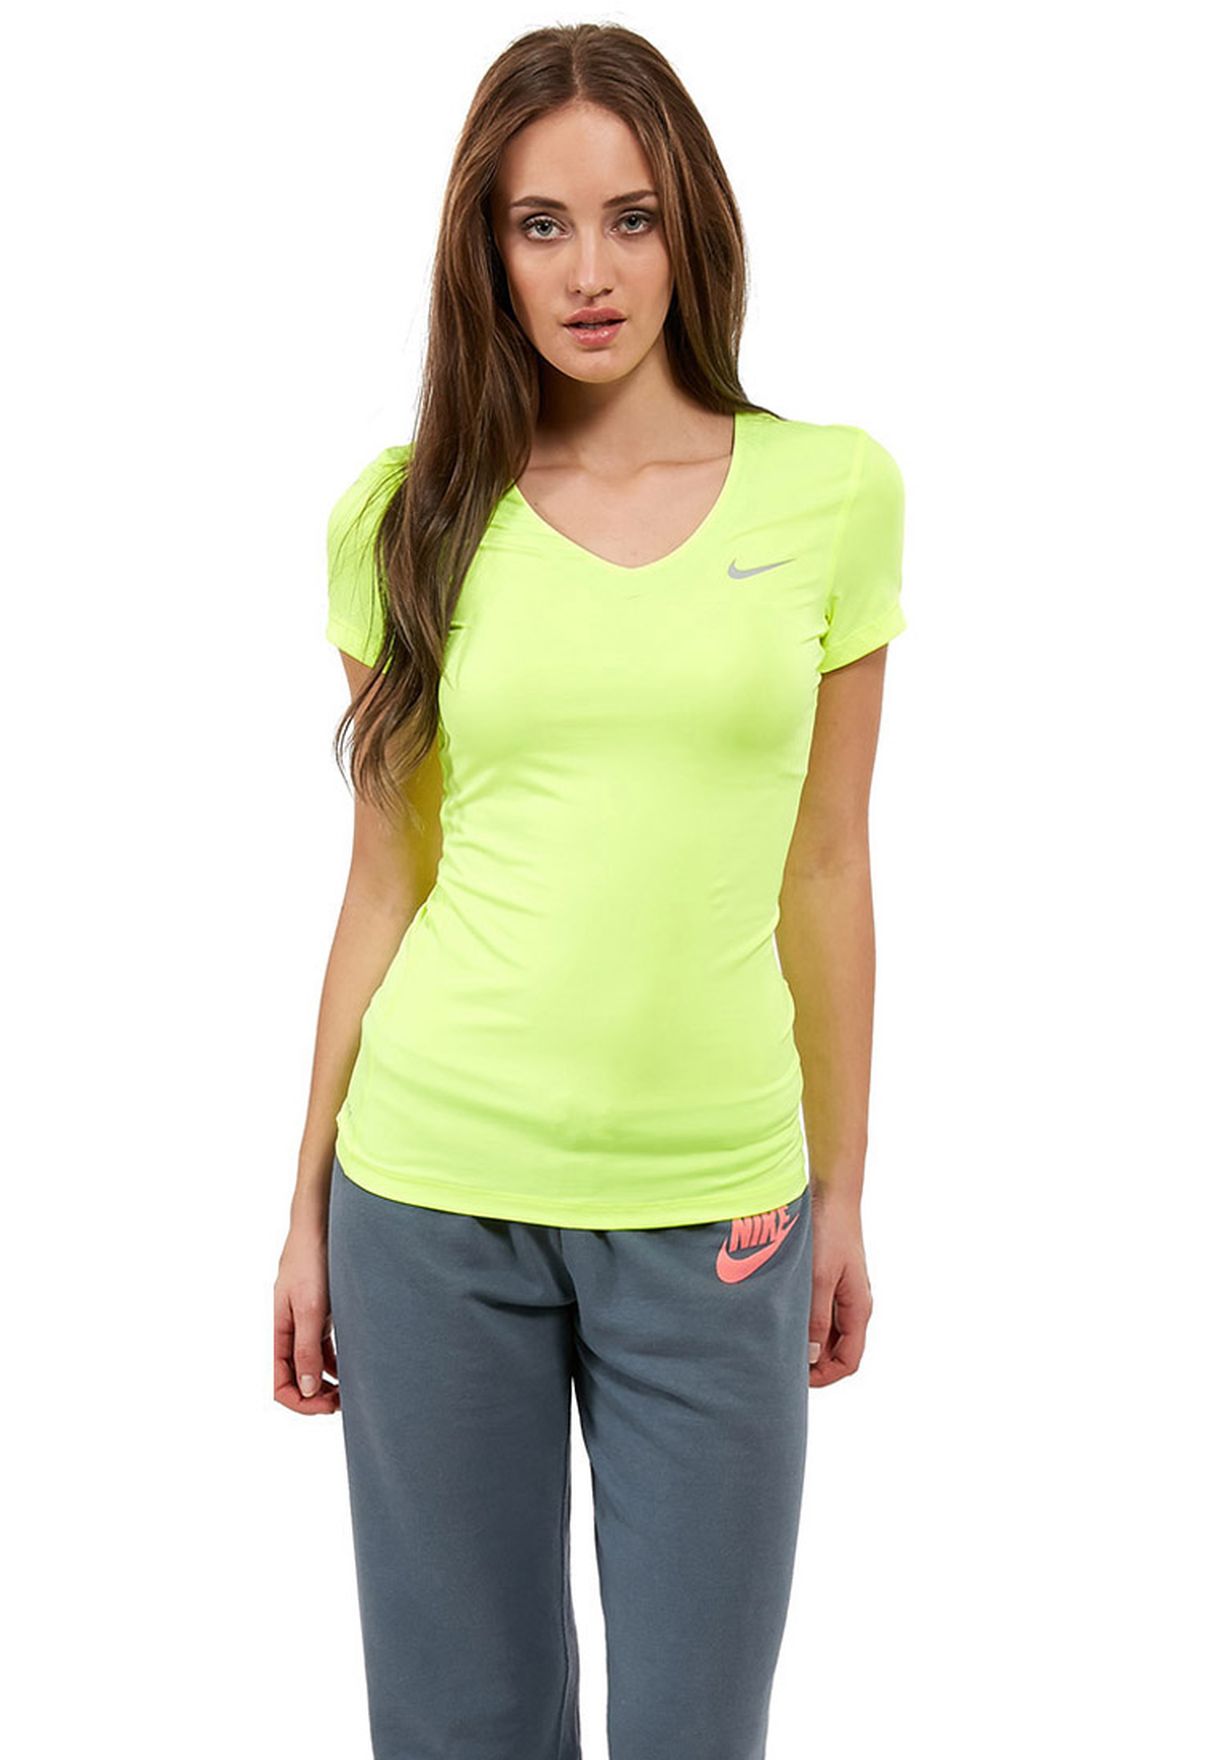 neon nike shirt women's